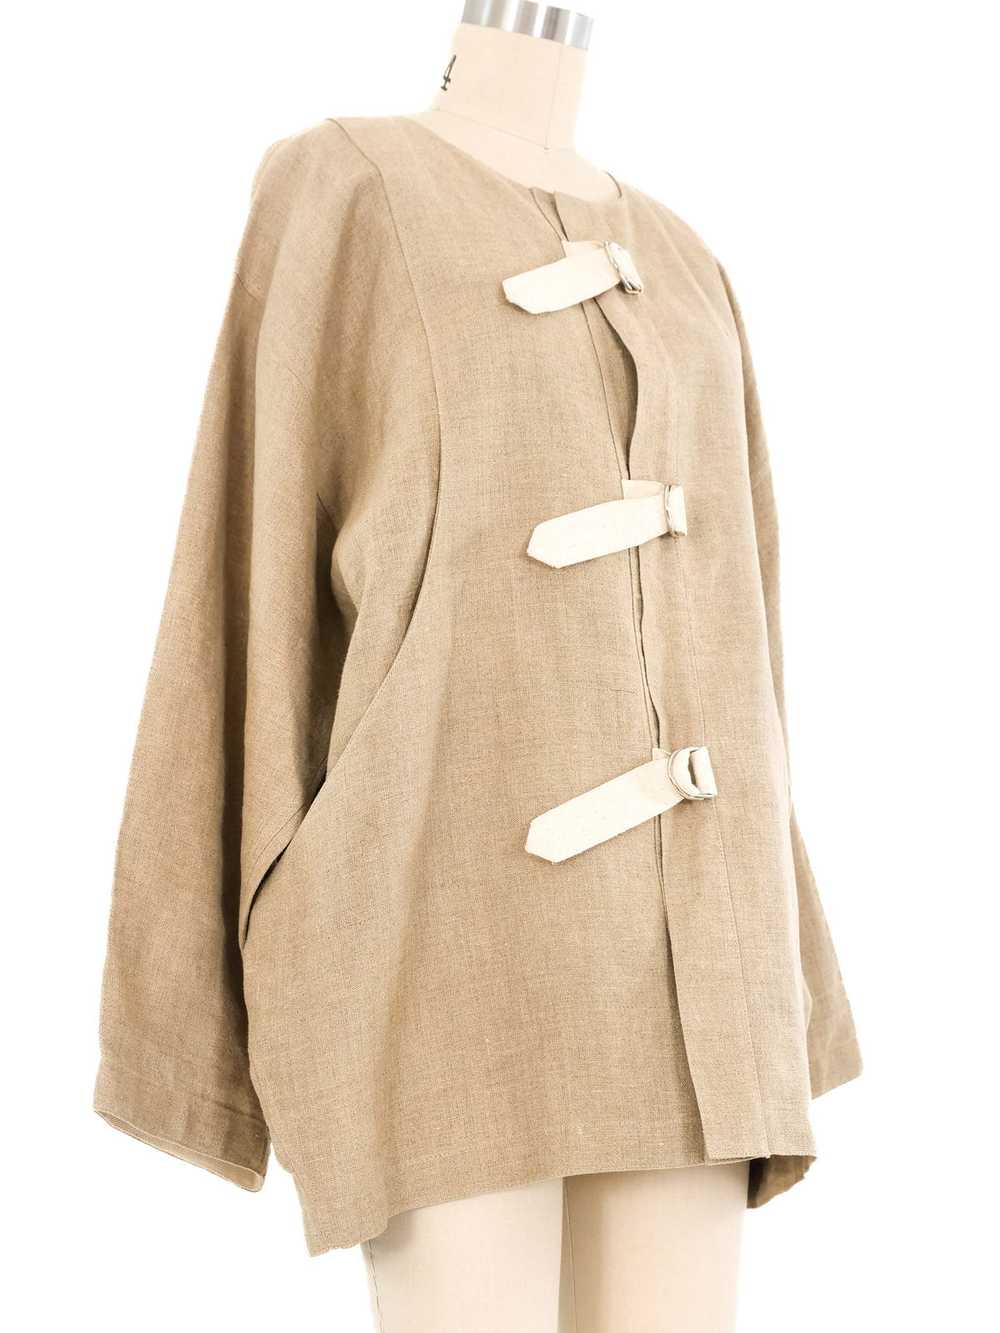 Castelbajac Belted Linen Jacket - image 3